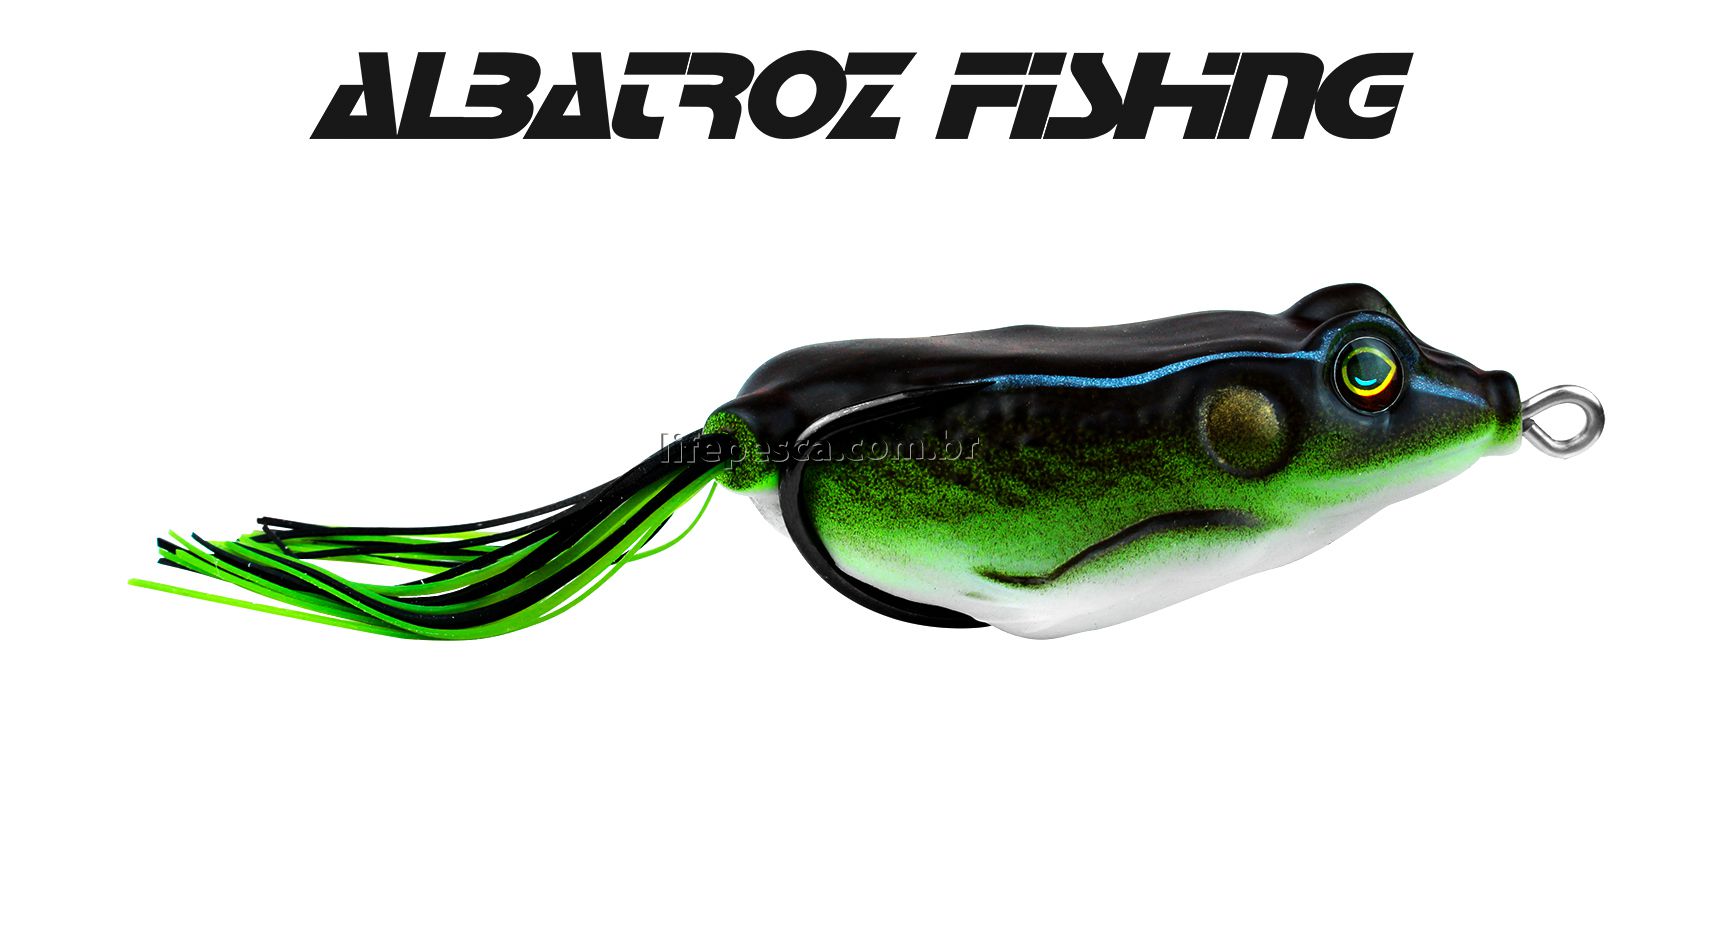 Isca Artificial Albatroz Fishing Top Frog Xy-10 - 6cm (18g) - Várias Cores  - Life Pesca - Sua loja de Pesca, Camping e Lazer